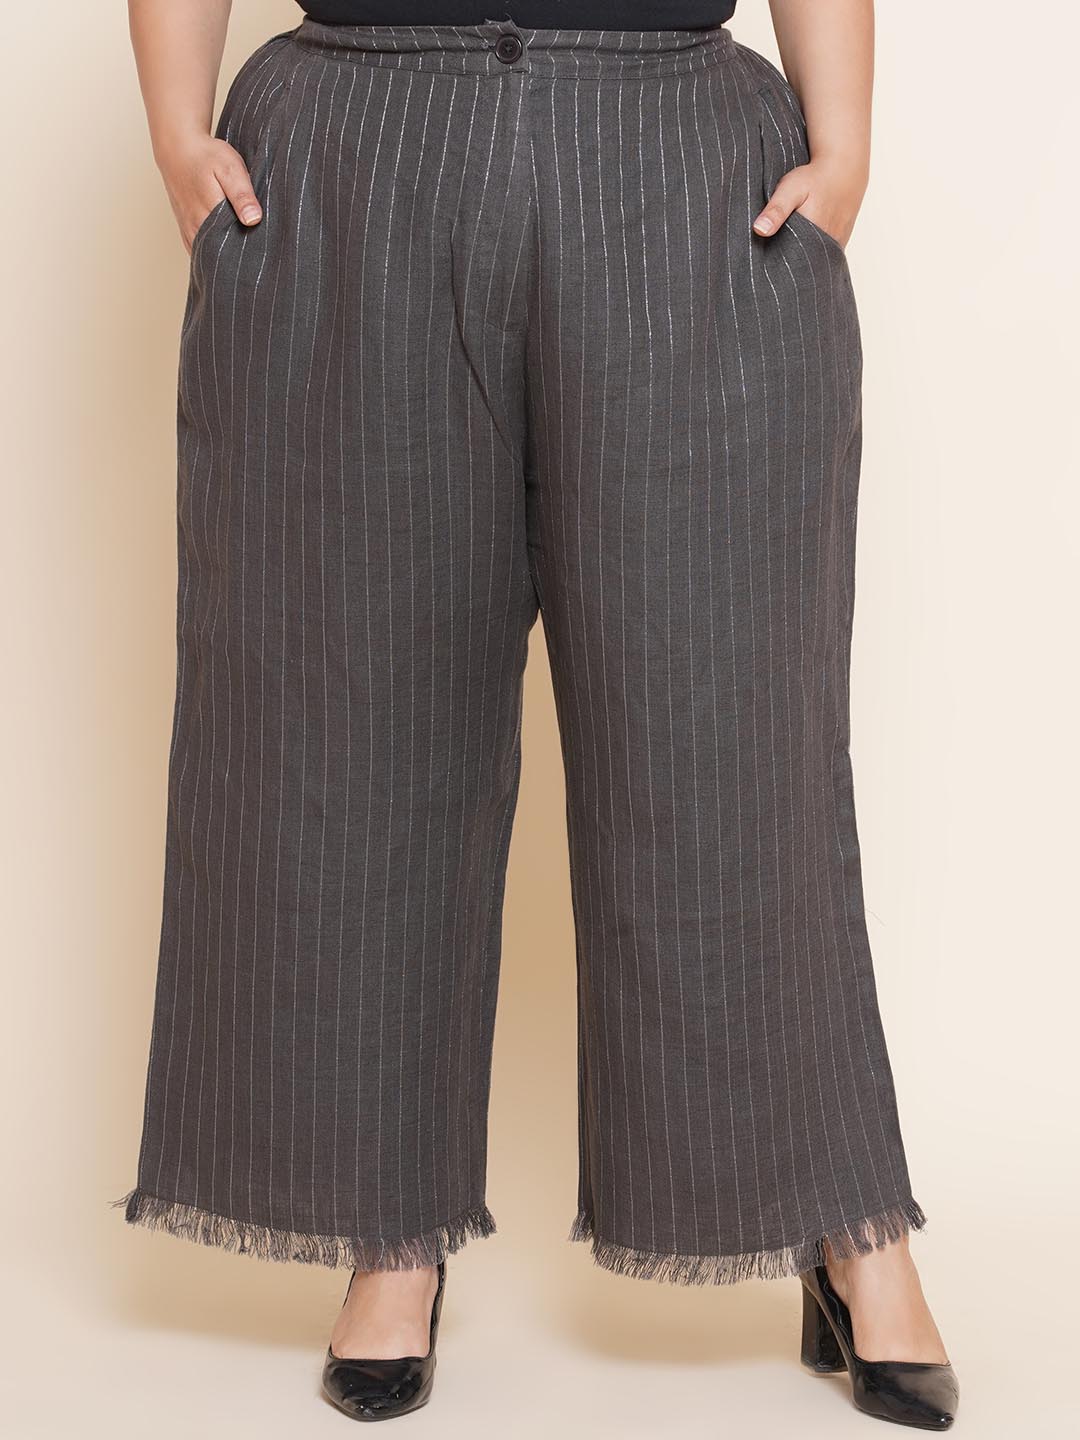 bottomwear_kiaahvi/trousers/KITR5018/kitr5018-1.jpg